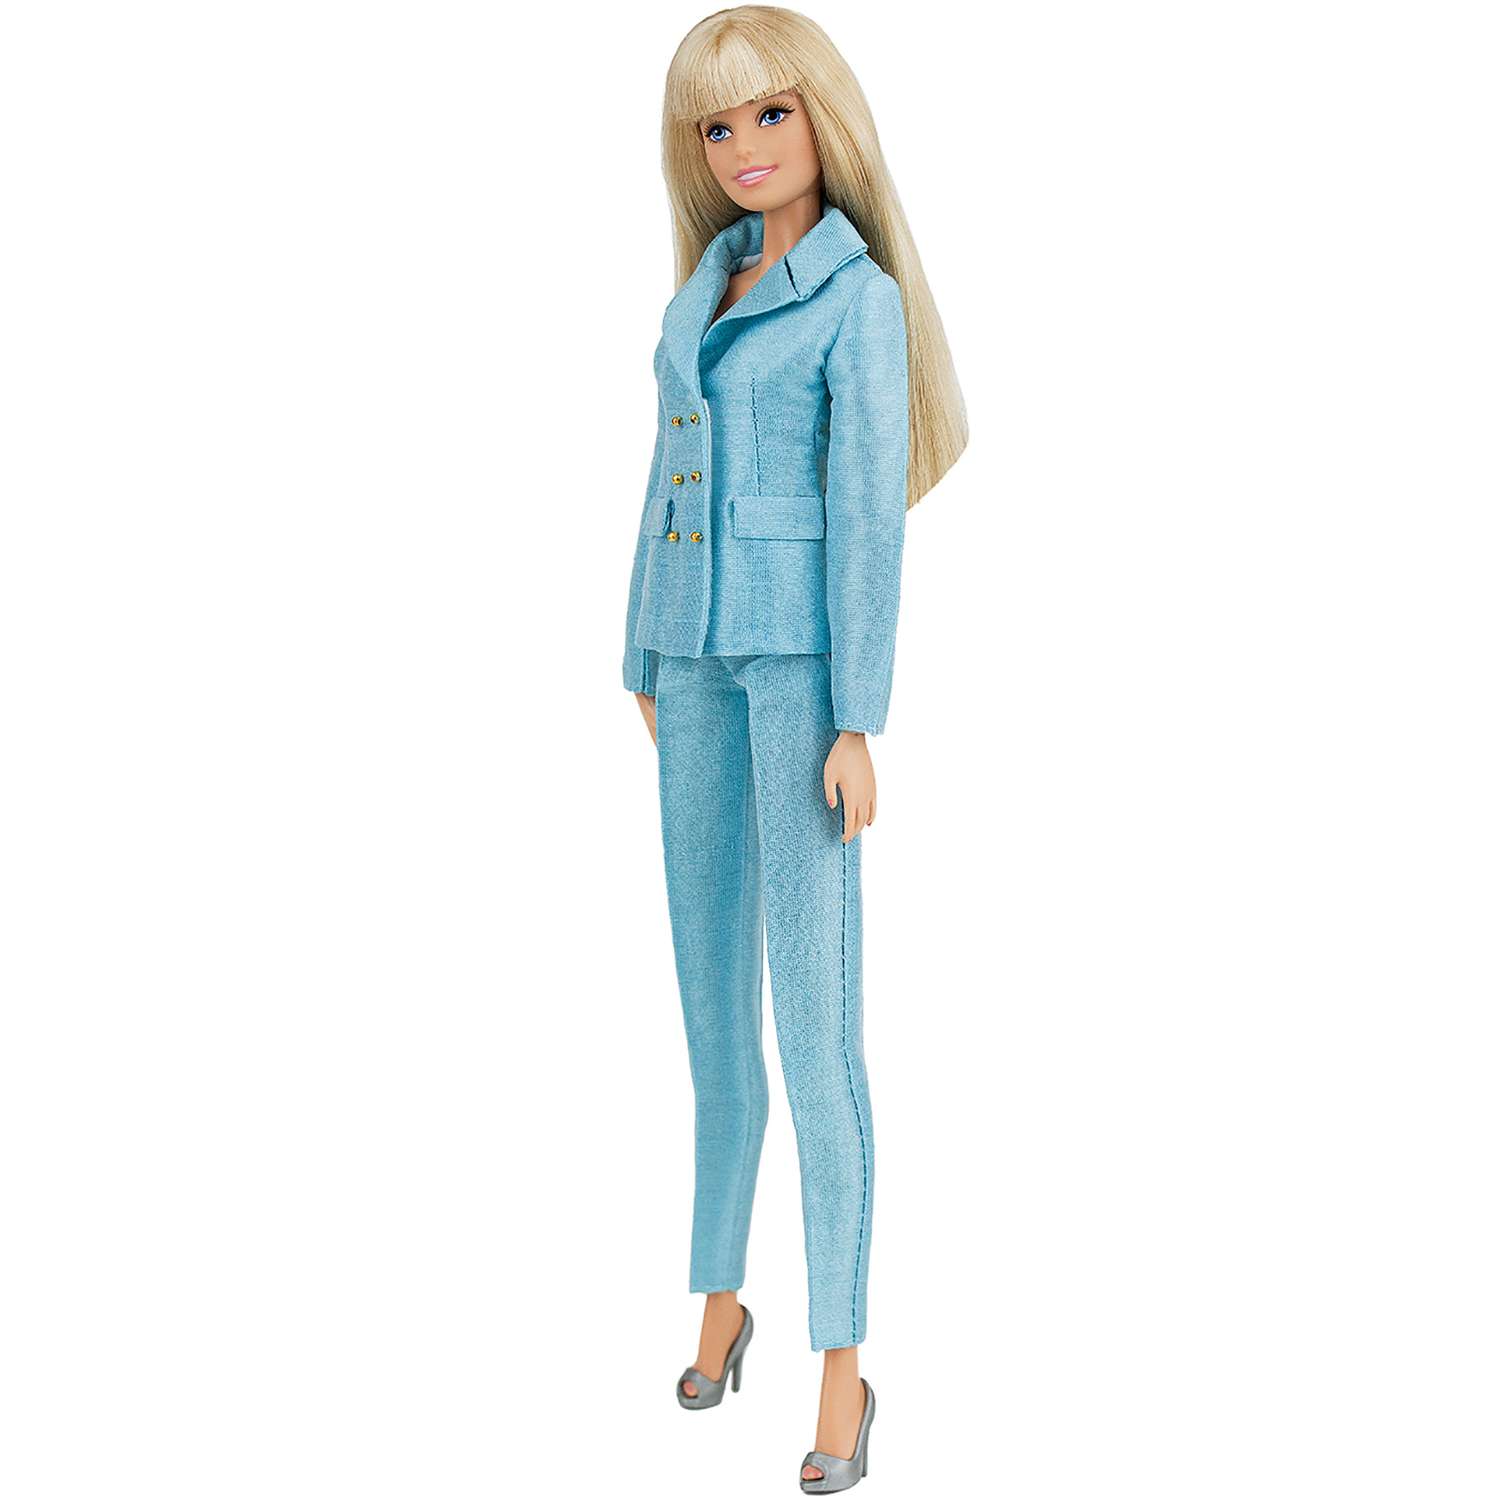 Шелковый брючный костюм Эленприв Небесно-голубой для куклы 29 см типа Барби FA-011-15 - фото 6